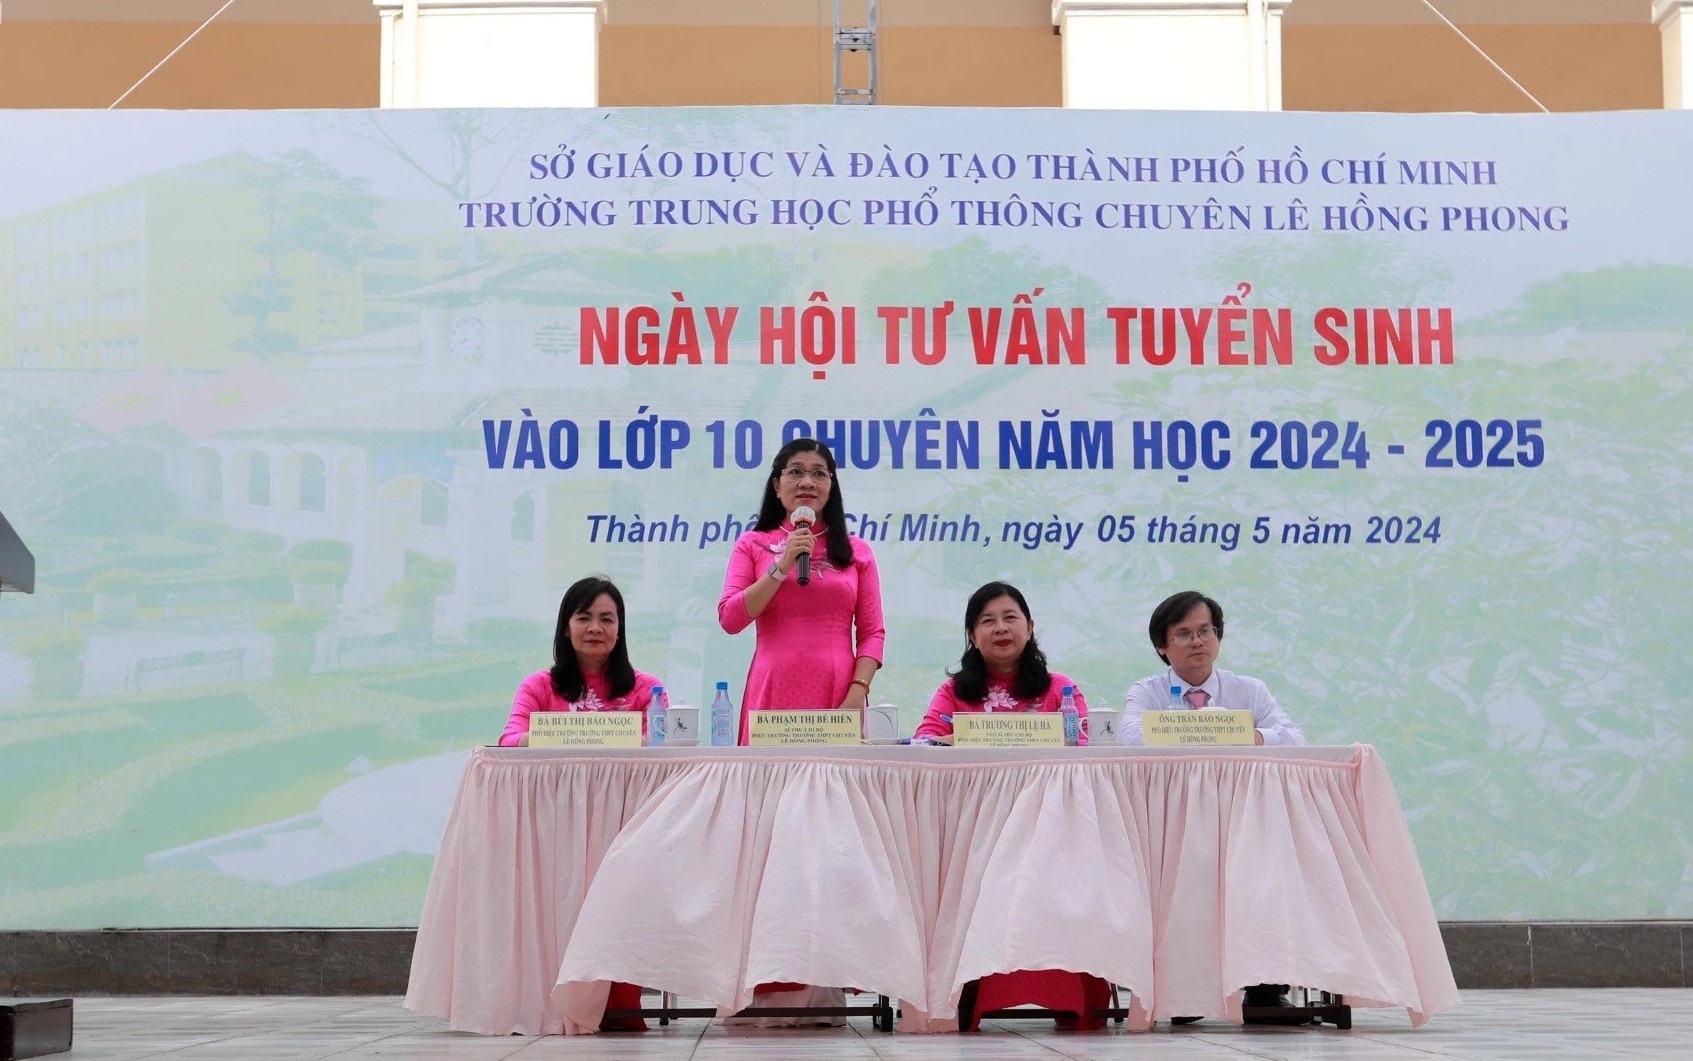 Bà Phạm Thị Bé Hiền, Hiệu trưởng Trường THPT chuyên Lê Hồng Phong (TP.HCM), thông tin về các quy định trong thi lớp 10 chuyên